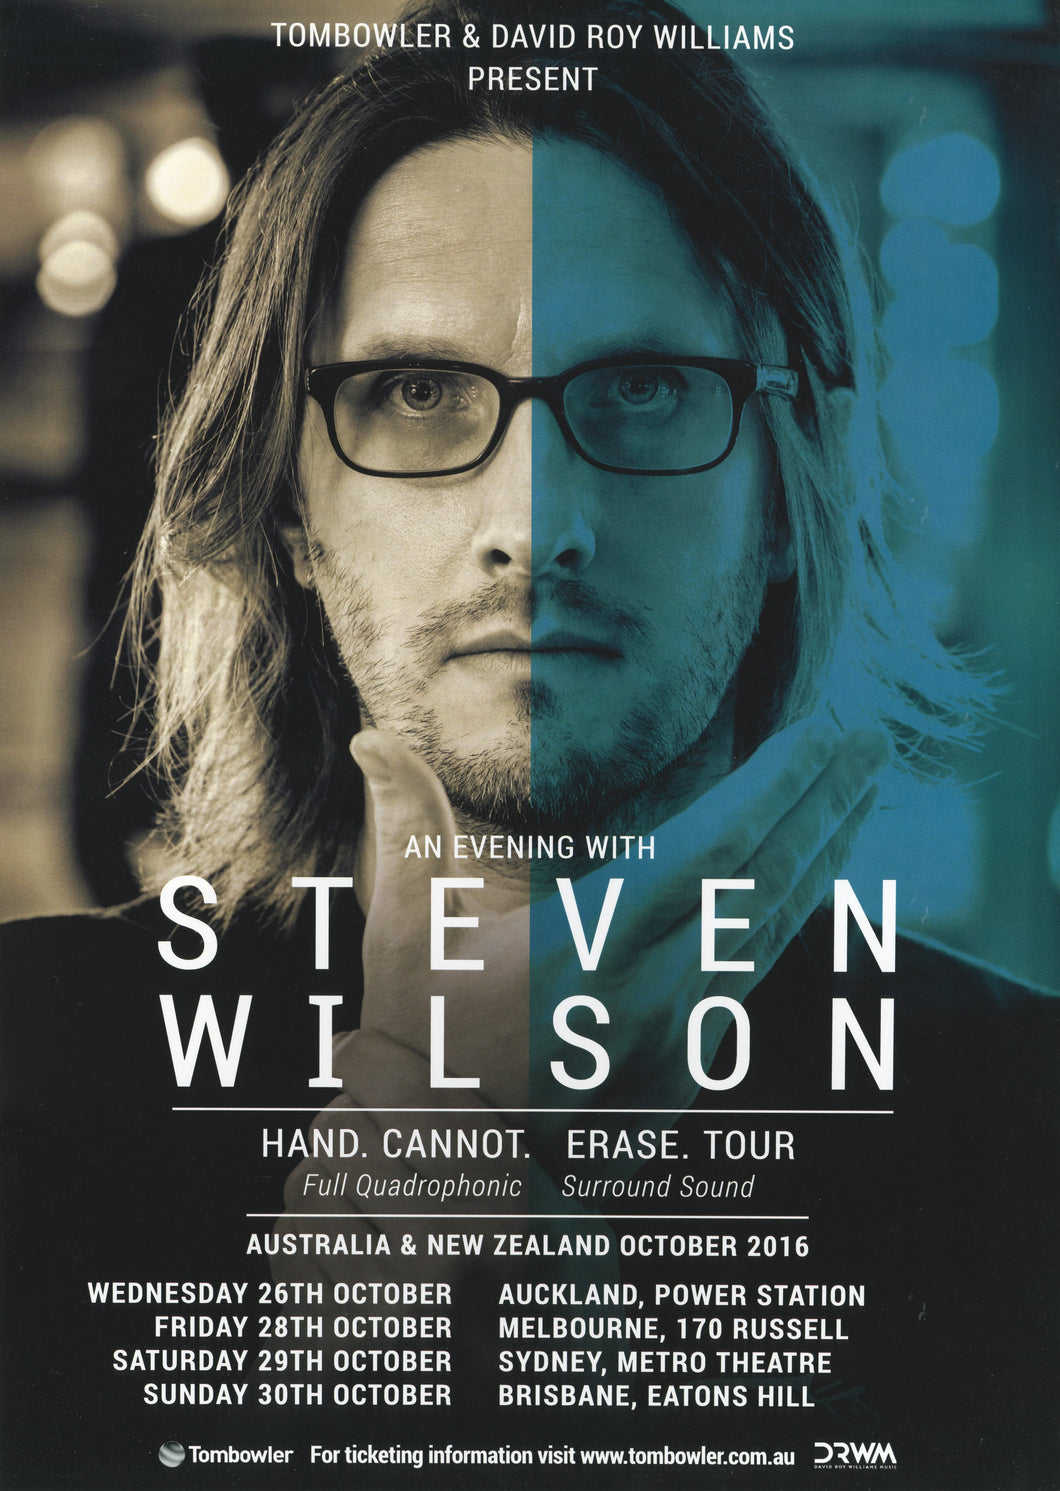 Steven Wilson Poster 2016